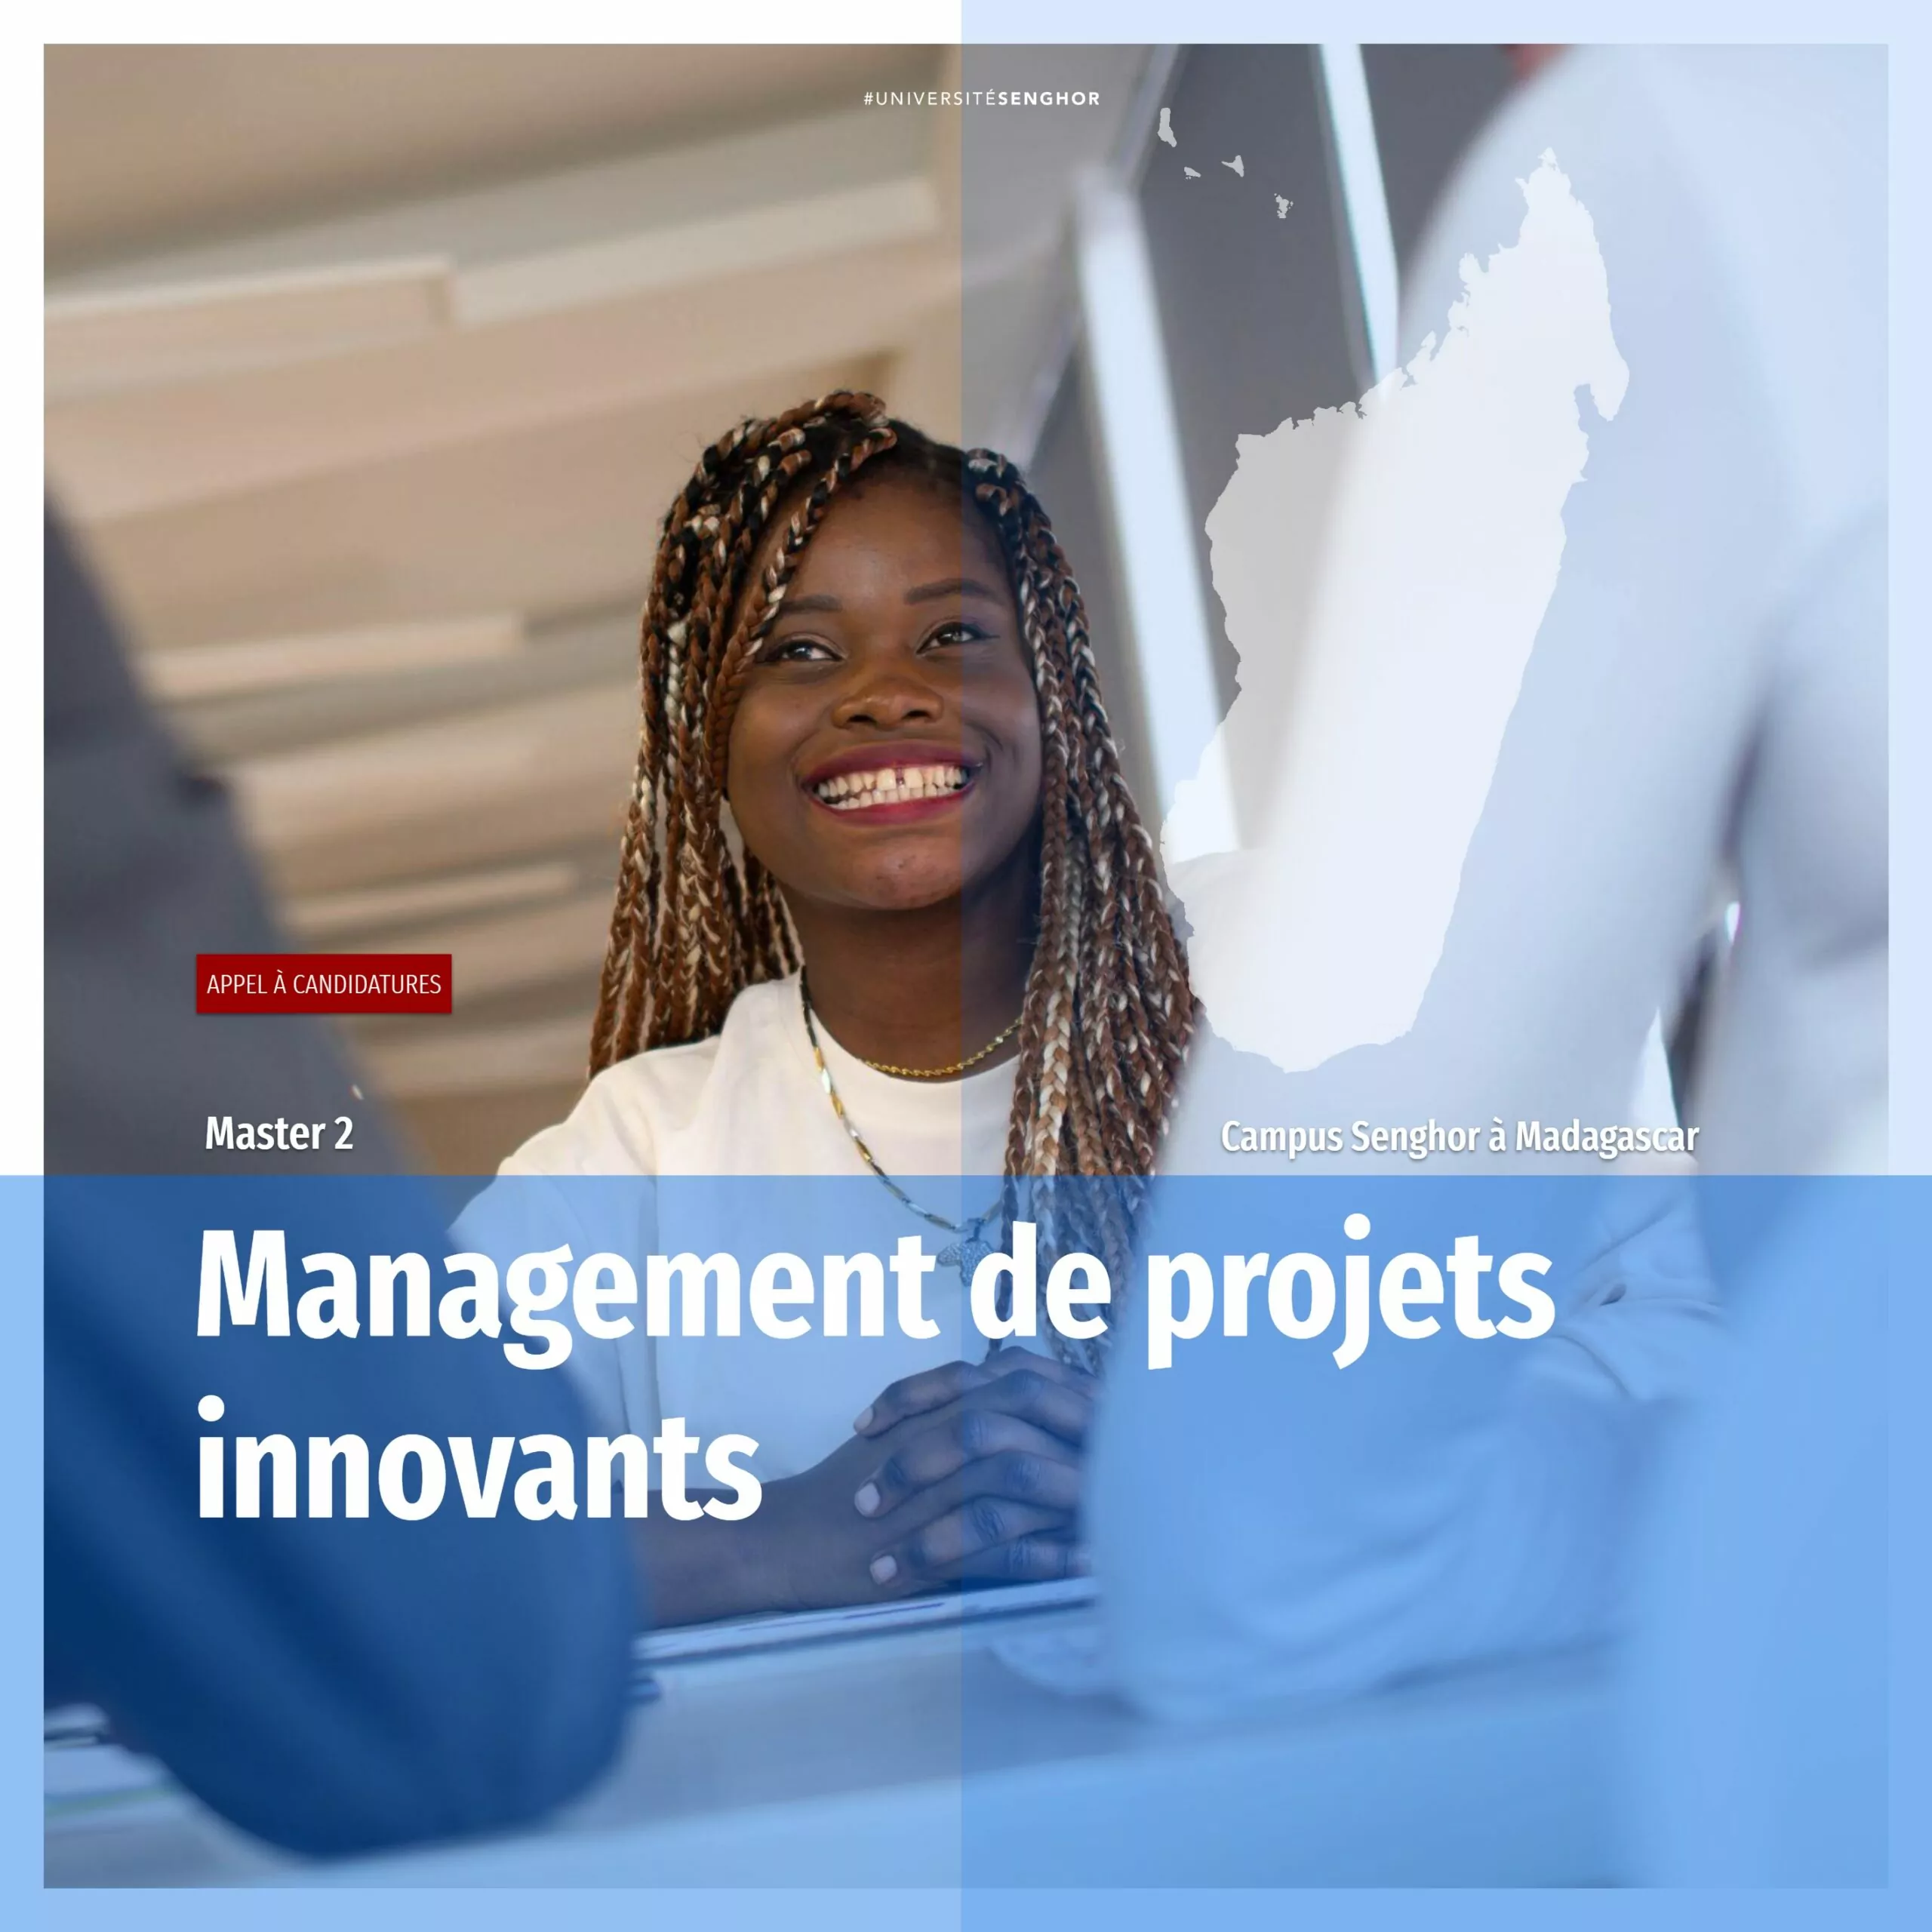 Avis d’appel à candidature pour le programme de Master 2 en Management de projets innovants, Antananarivo, Madagascar